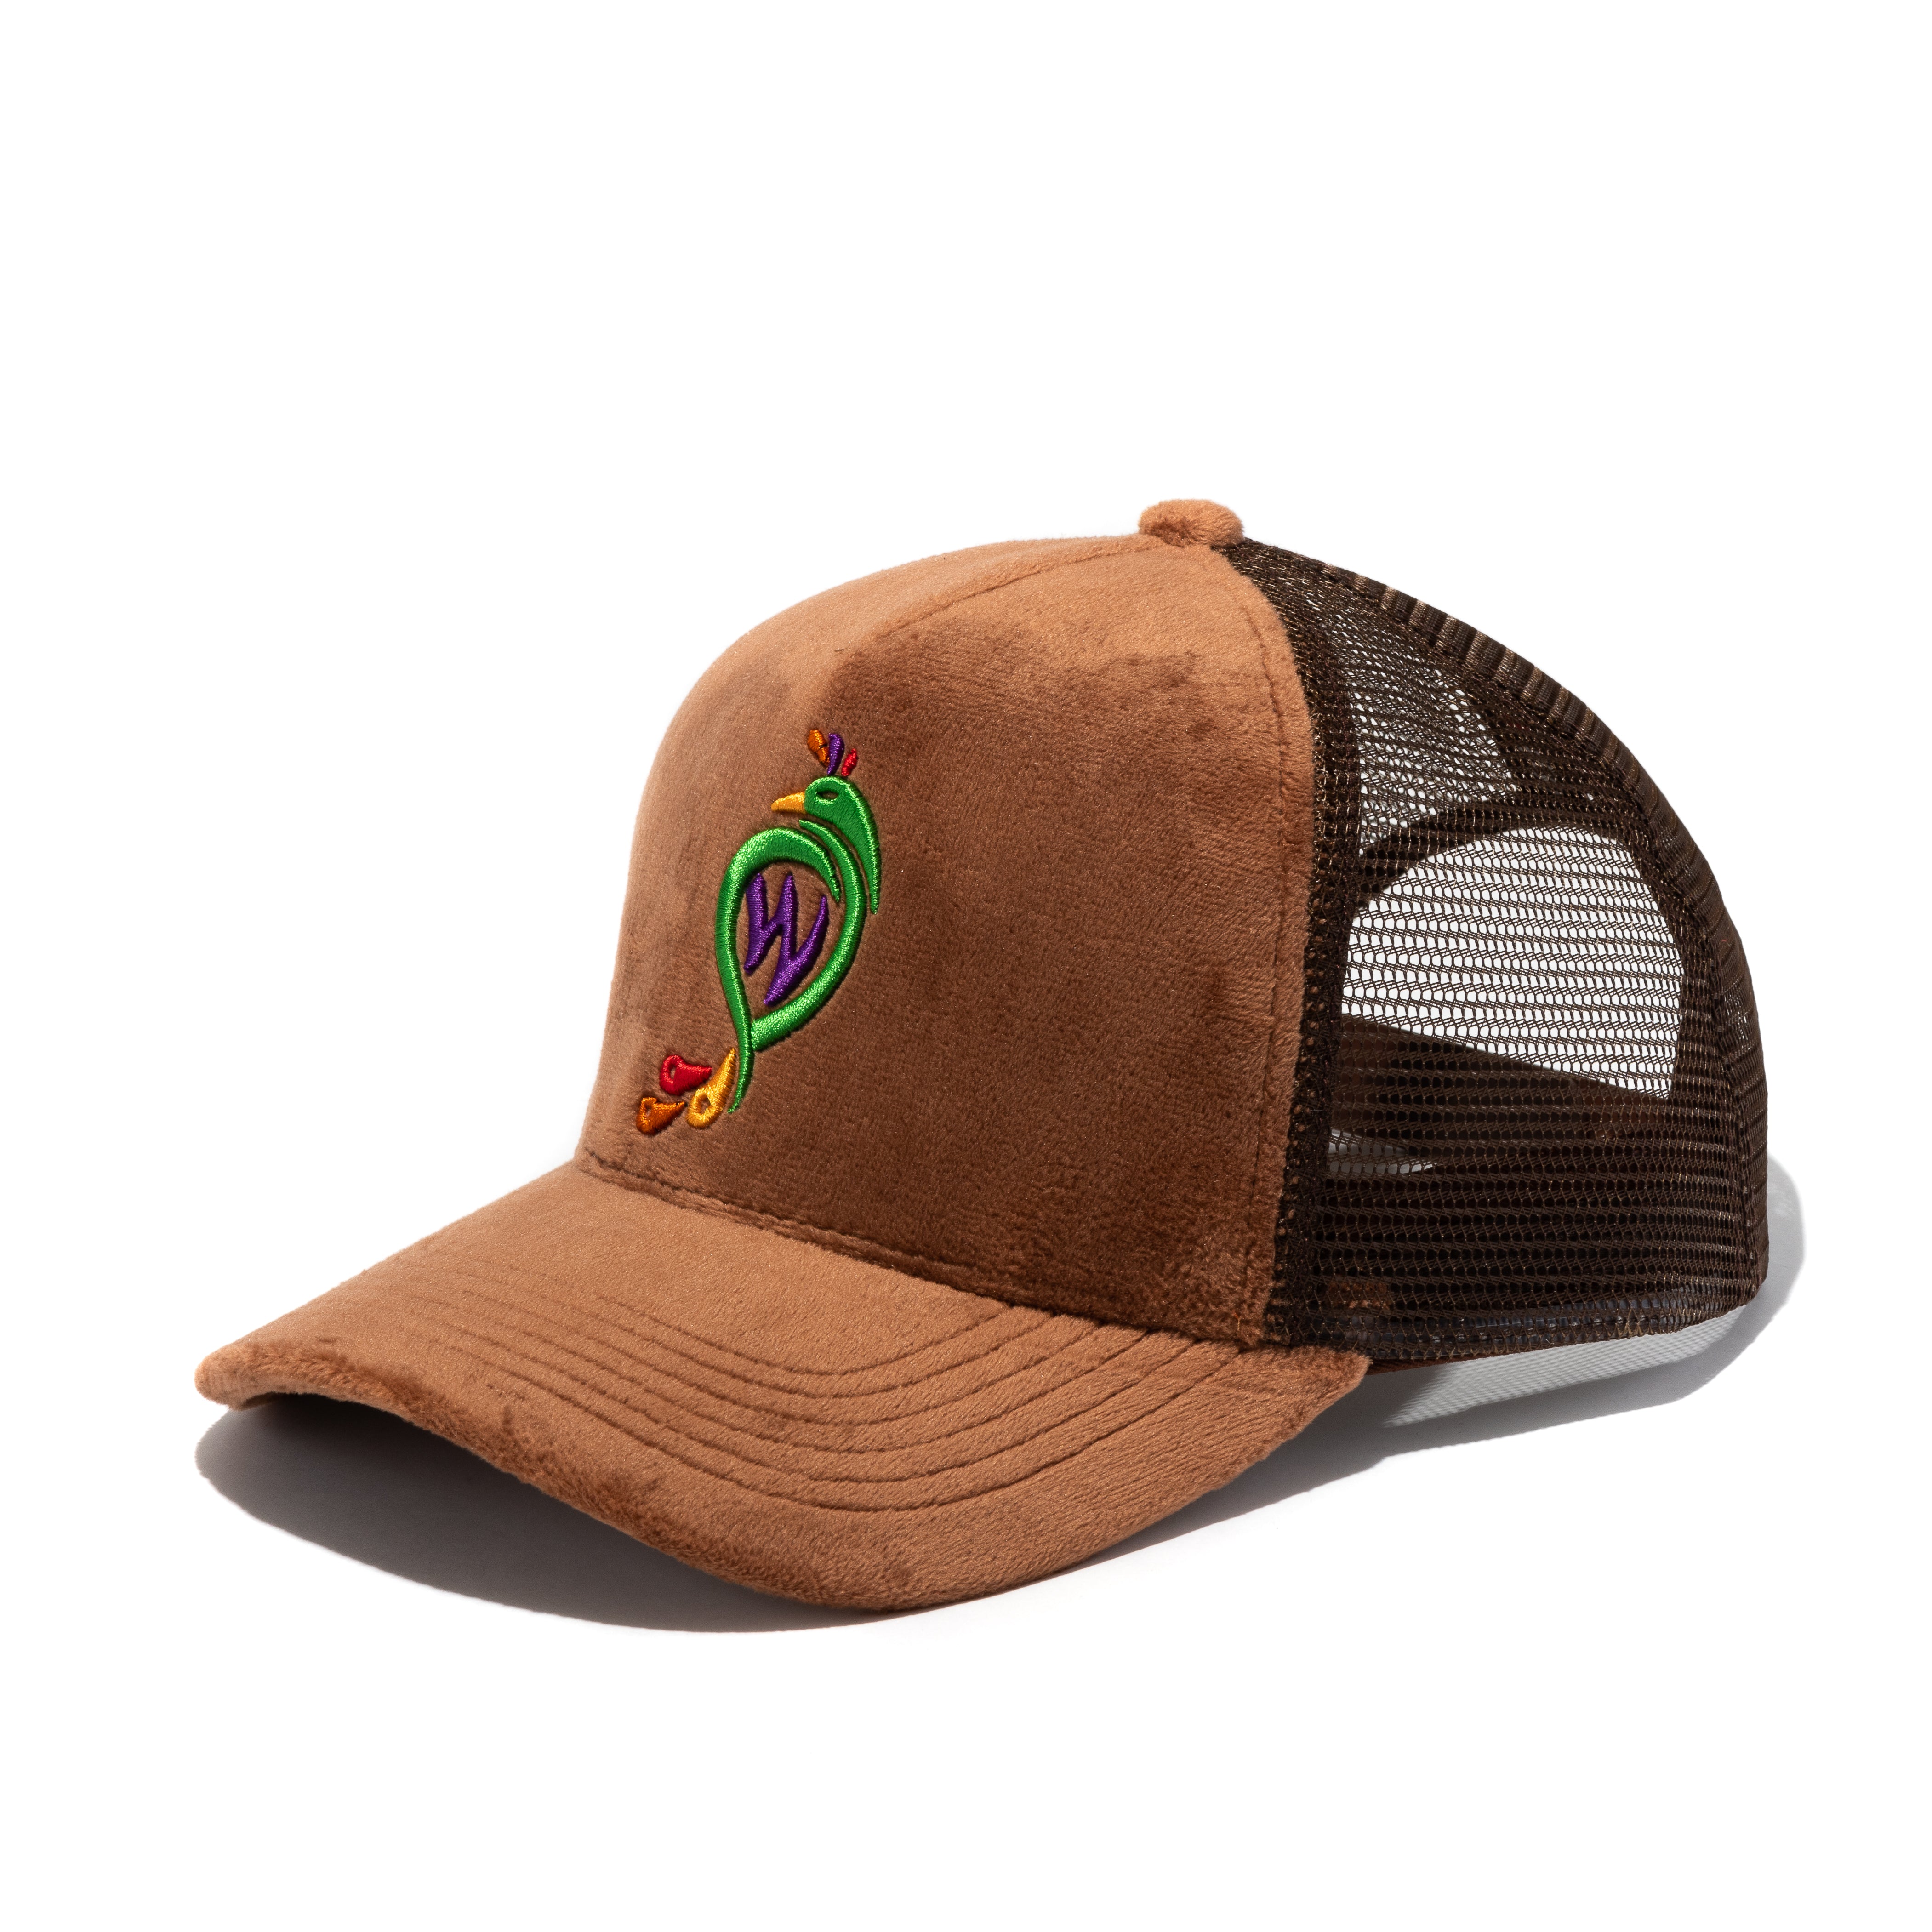 Trucker Hat Peacock-Brown